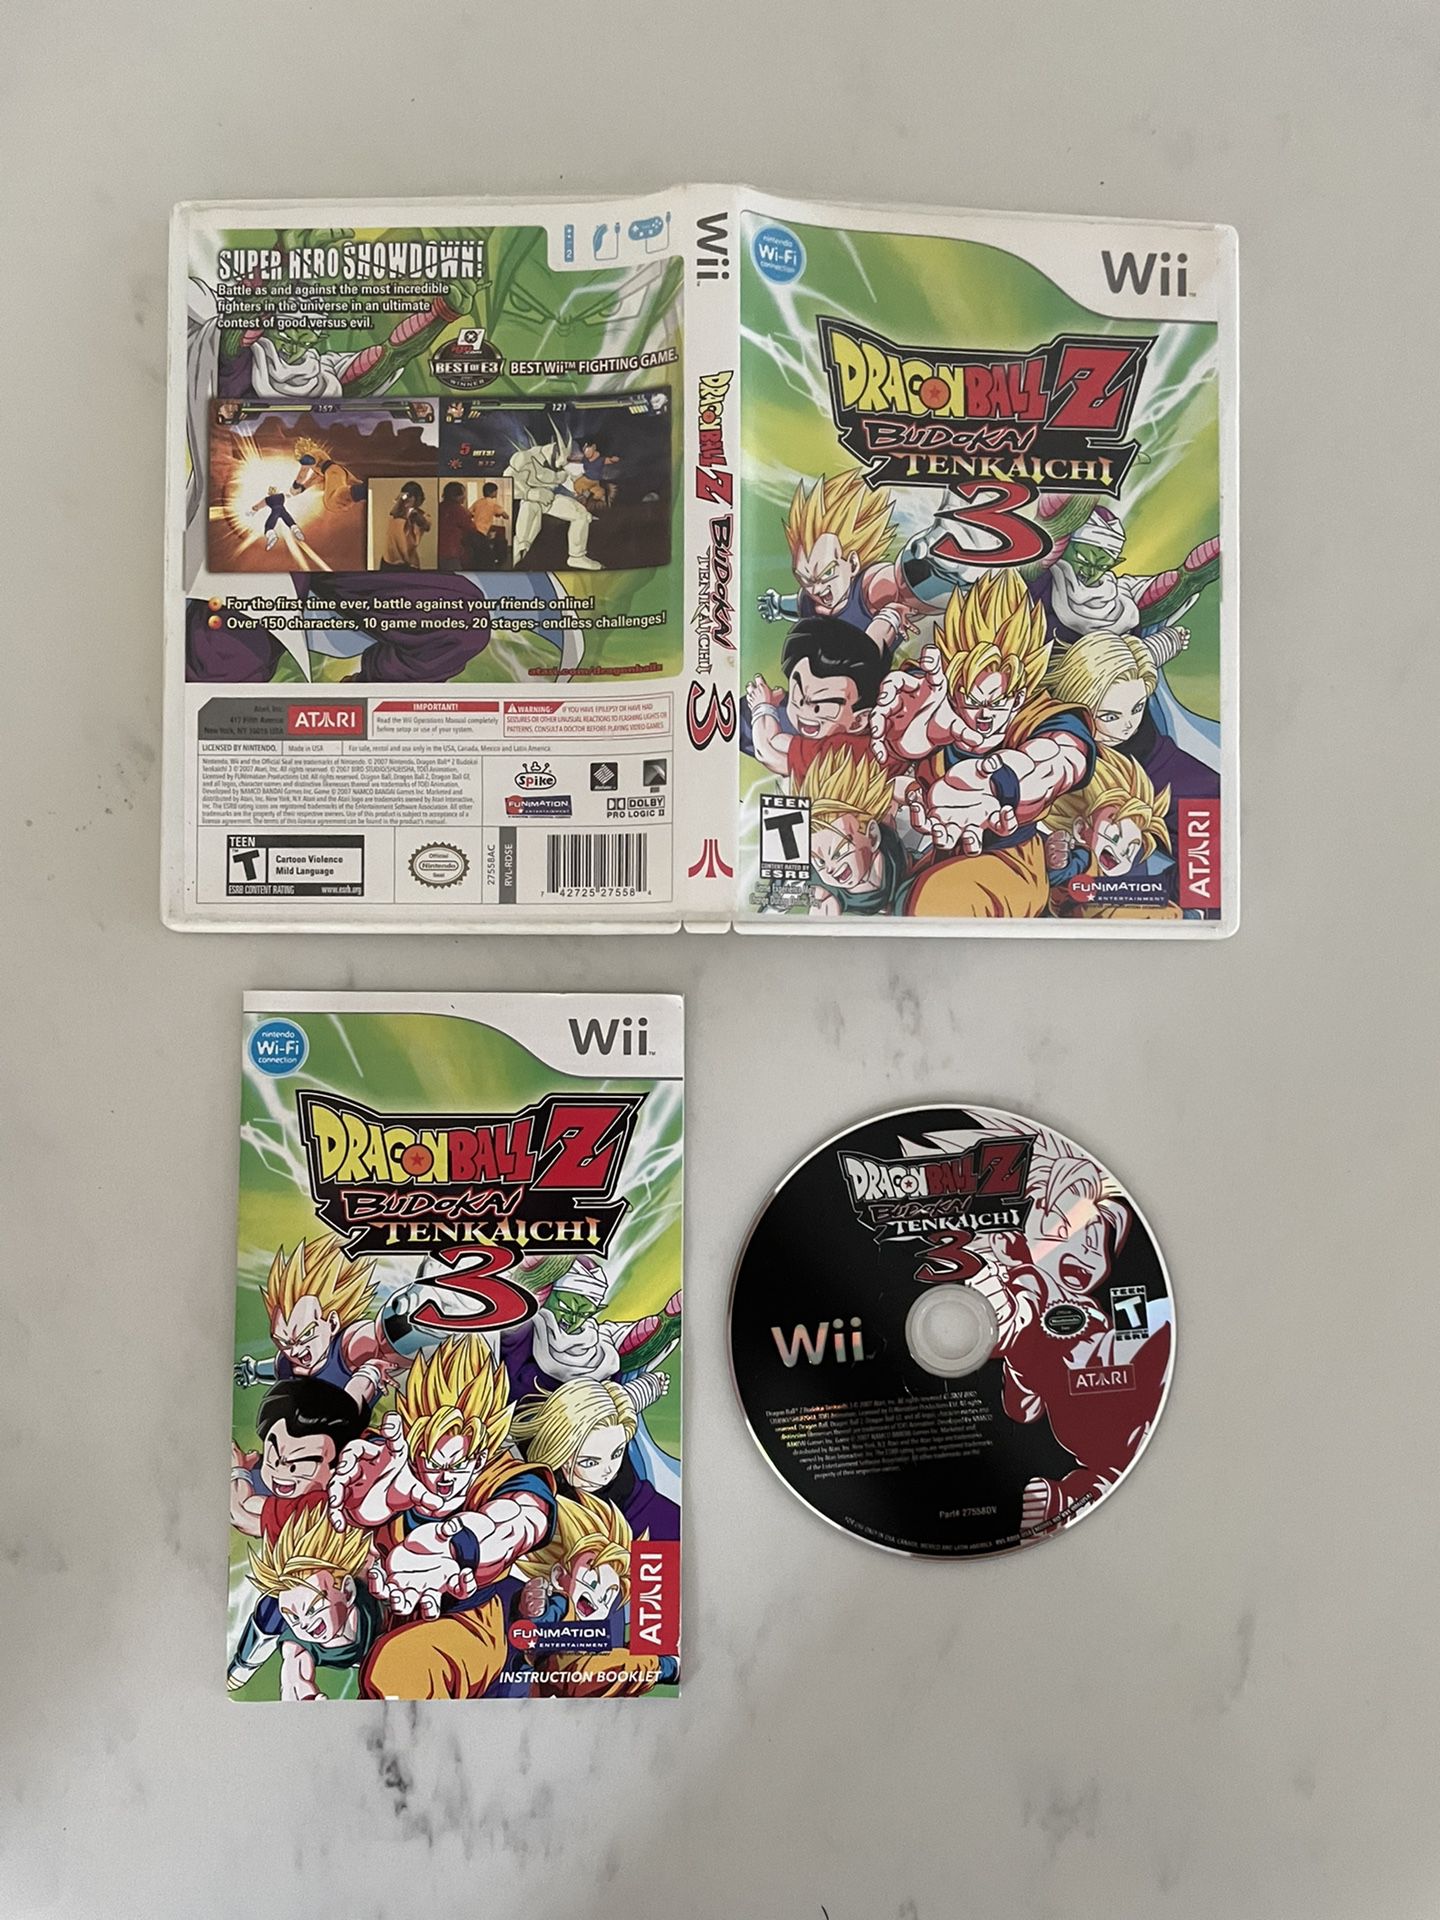 Dragon Ball Z: Budokai Tenkaichi 3 Review (Wii) 